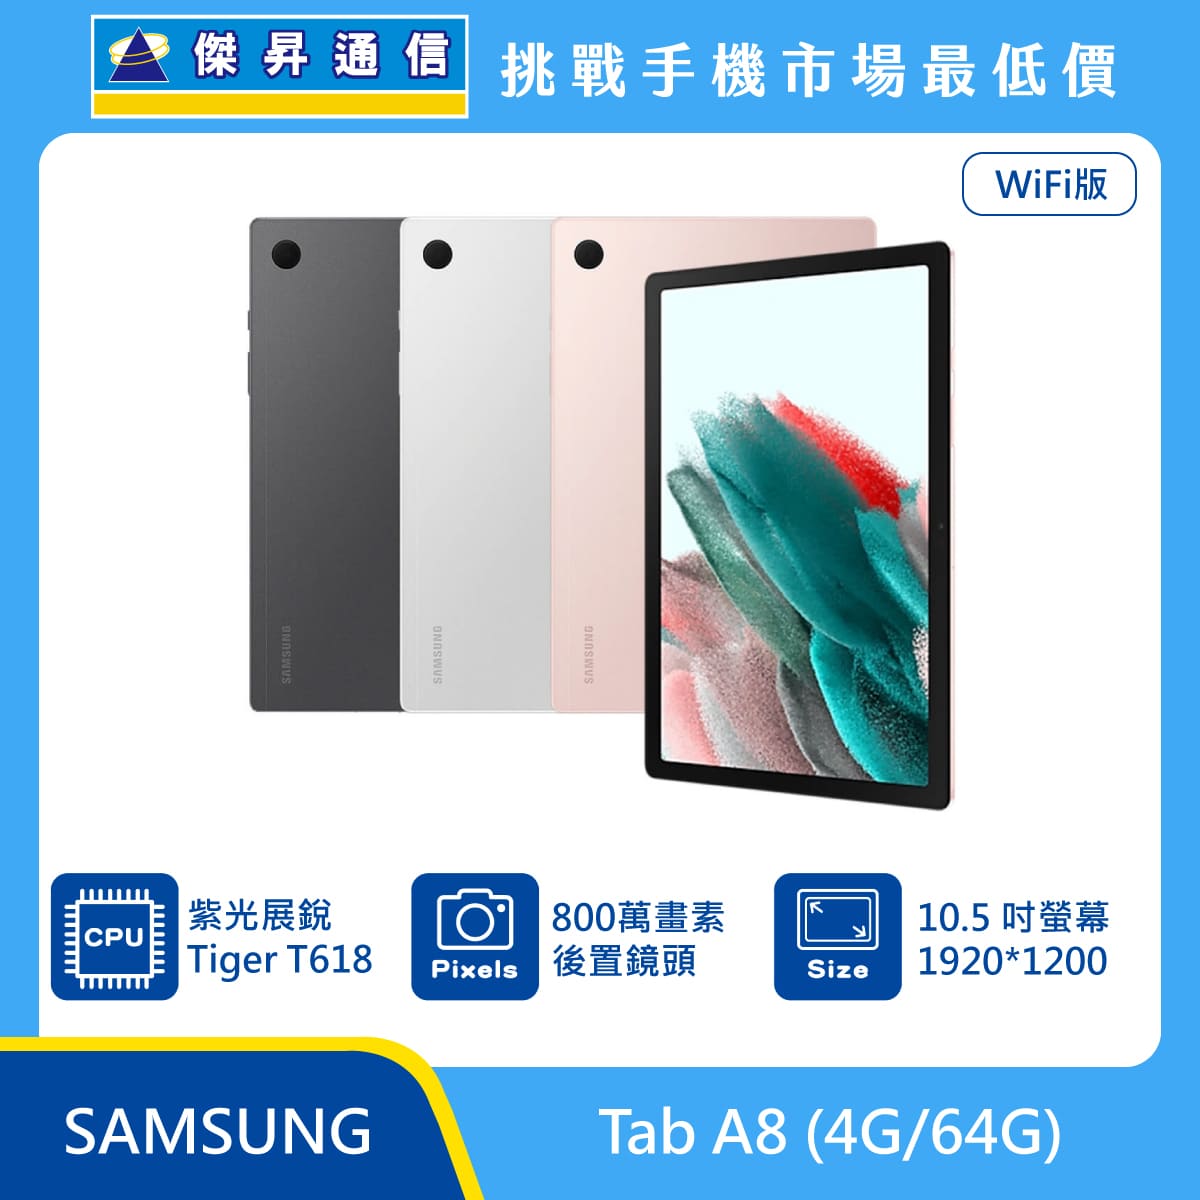 SAMSUNG 平板 Tab A8 Wi-Fi (4G/64G)